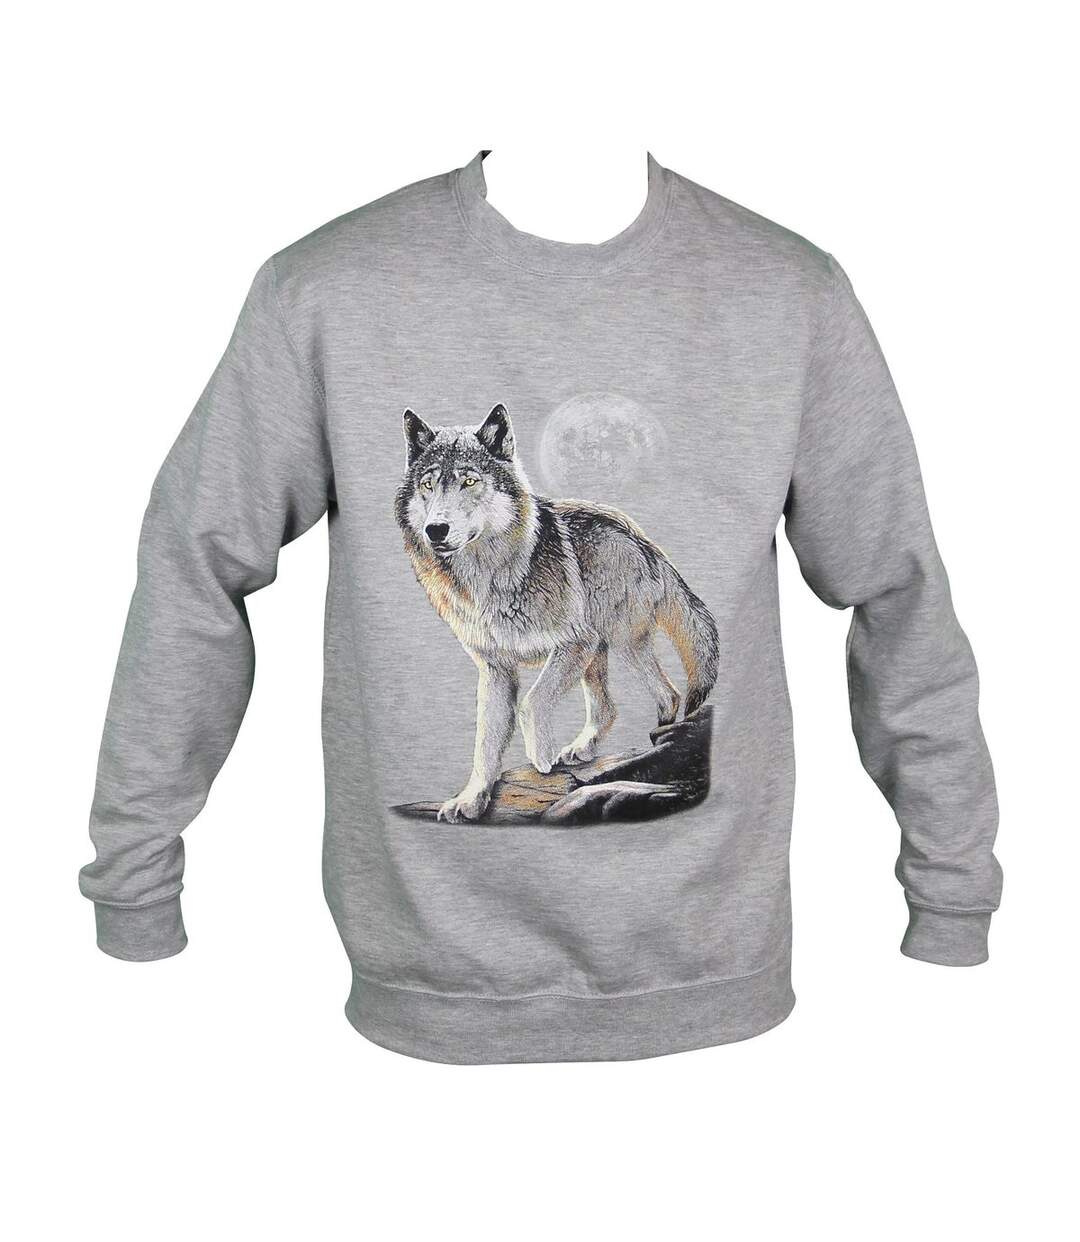 Sweat-shirt motif loup - 10380 - homme - gris chiné